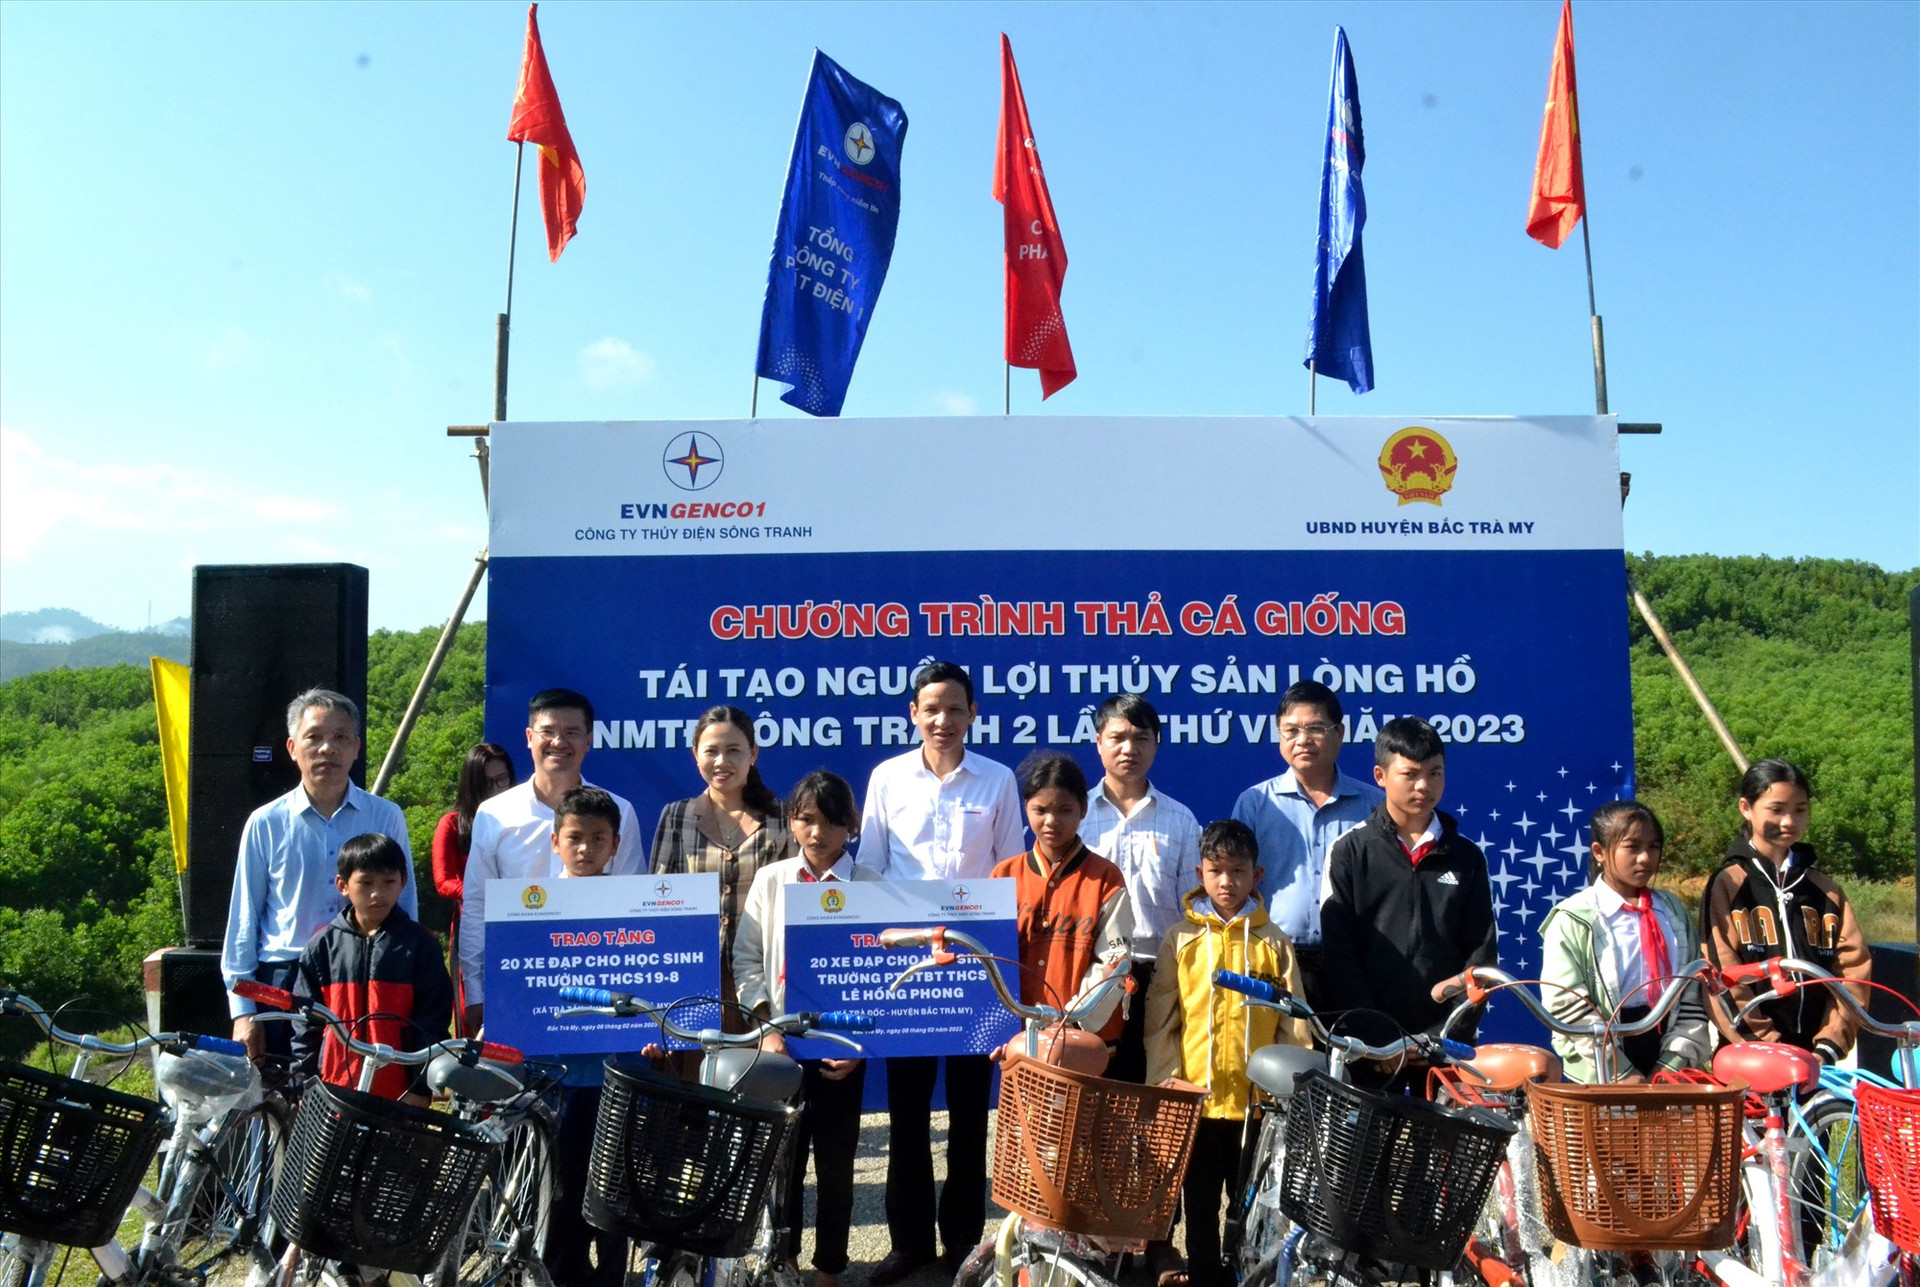 Công ty Thủy điện Sông Tranh và Công đoàn Tổng công ty Phát điện 1 đã trao tặng 40 chiếc xe đạp cho các em học sinh nghèo hiếu học trên địa bàn huyện Bắc Trà My. Ảnh; Q.VIỆT